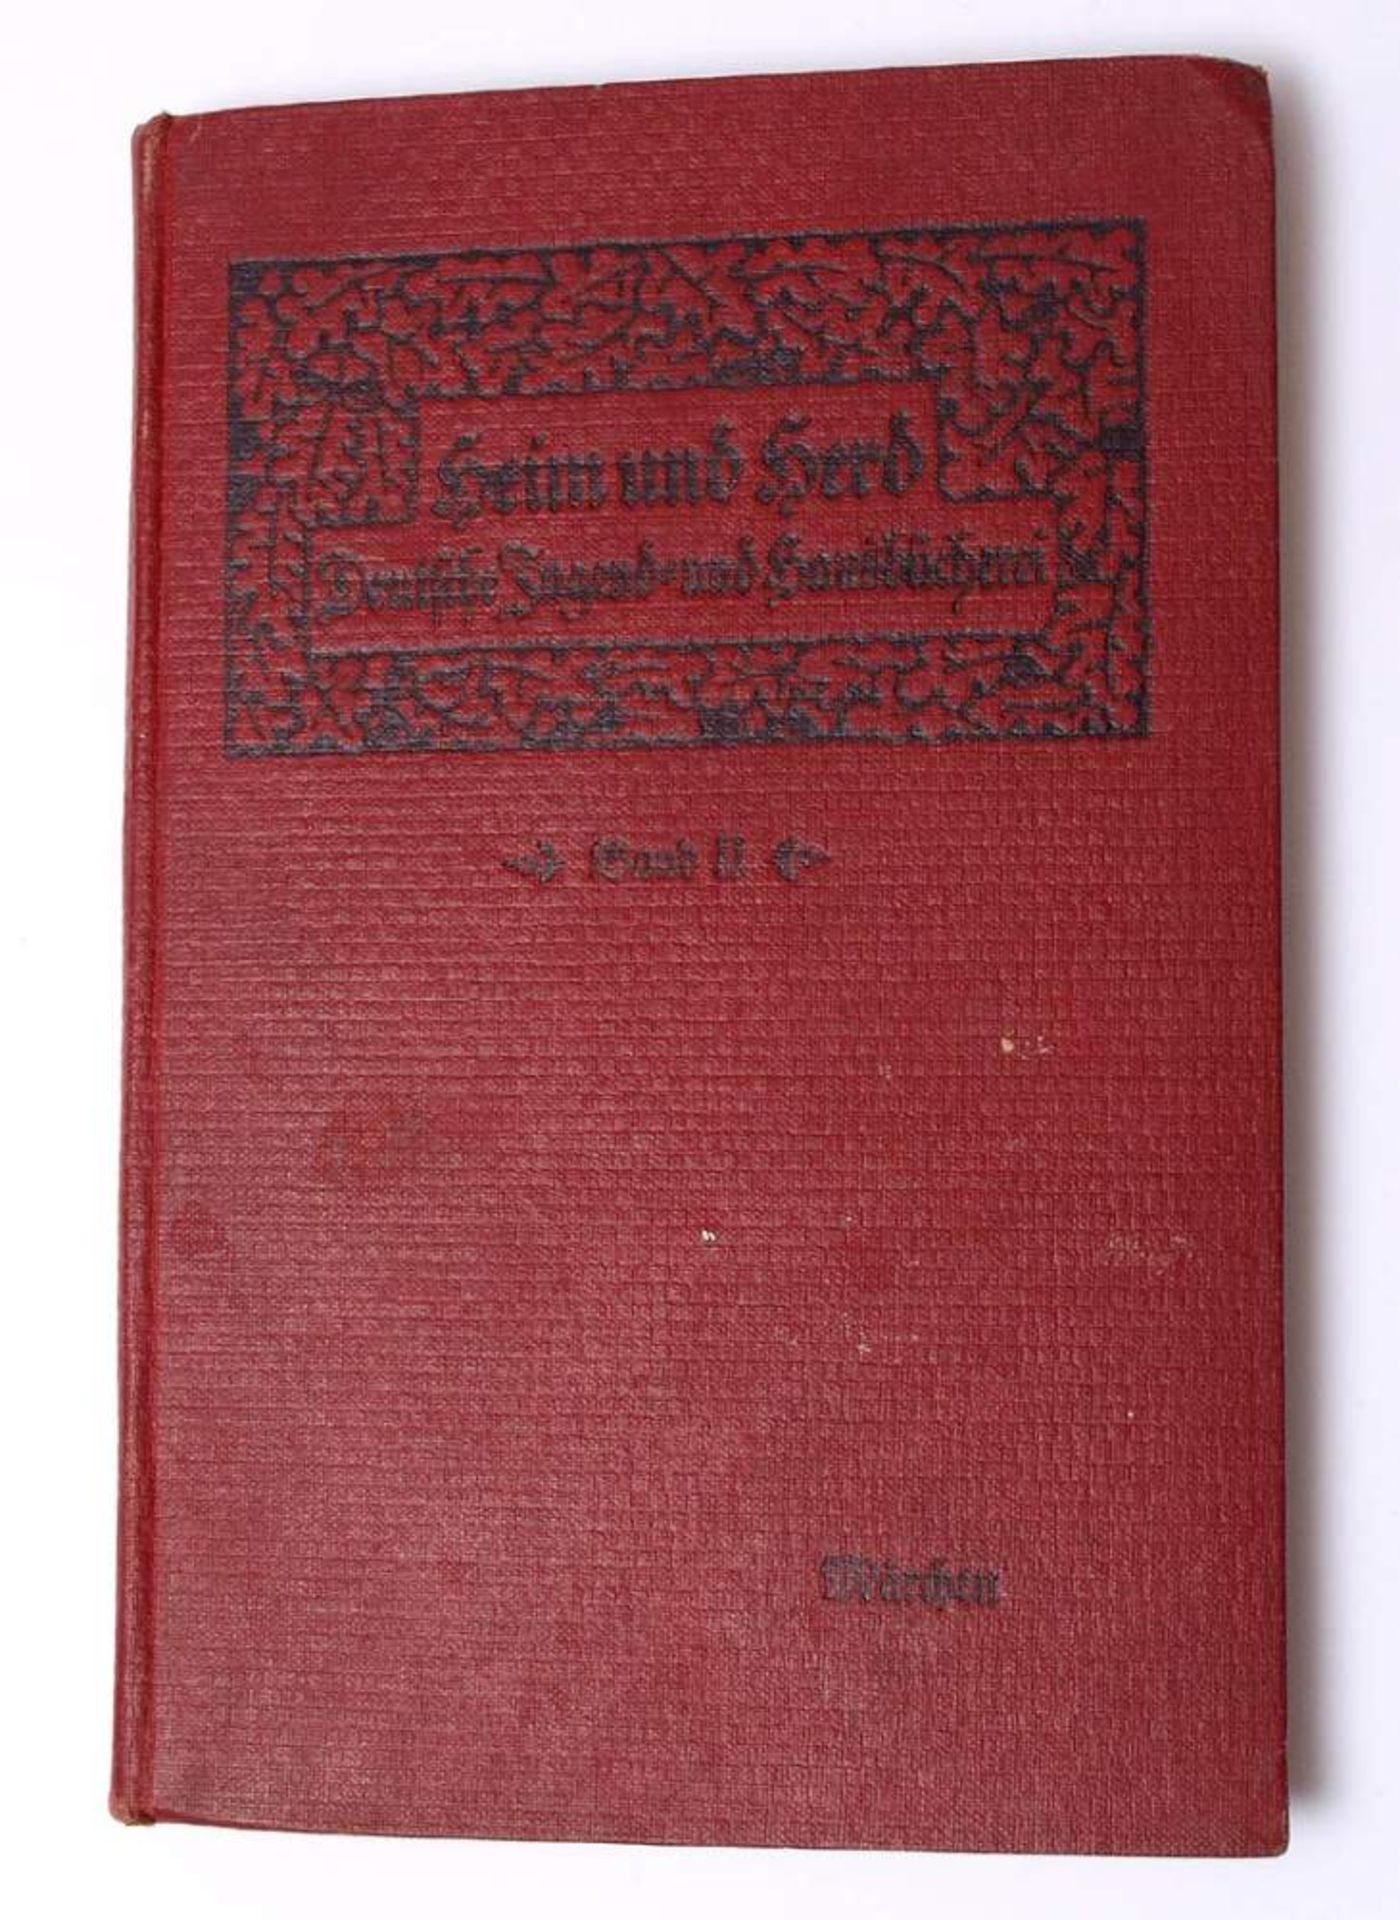 Heim und HerdBd.2 mit diversen Märchen. 2. Auflage, Schauenburg, Lahr 1912.